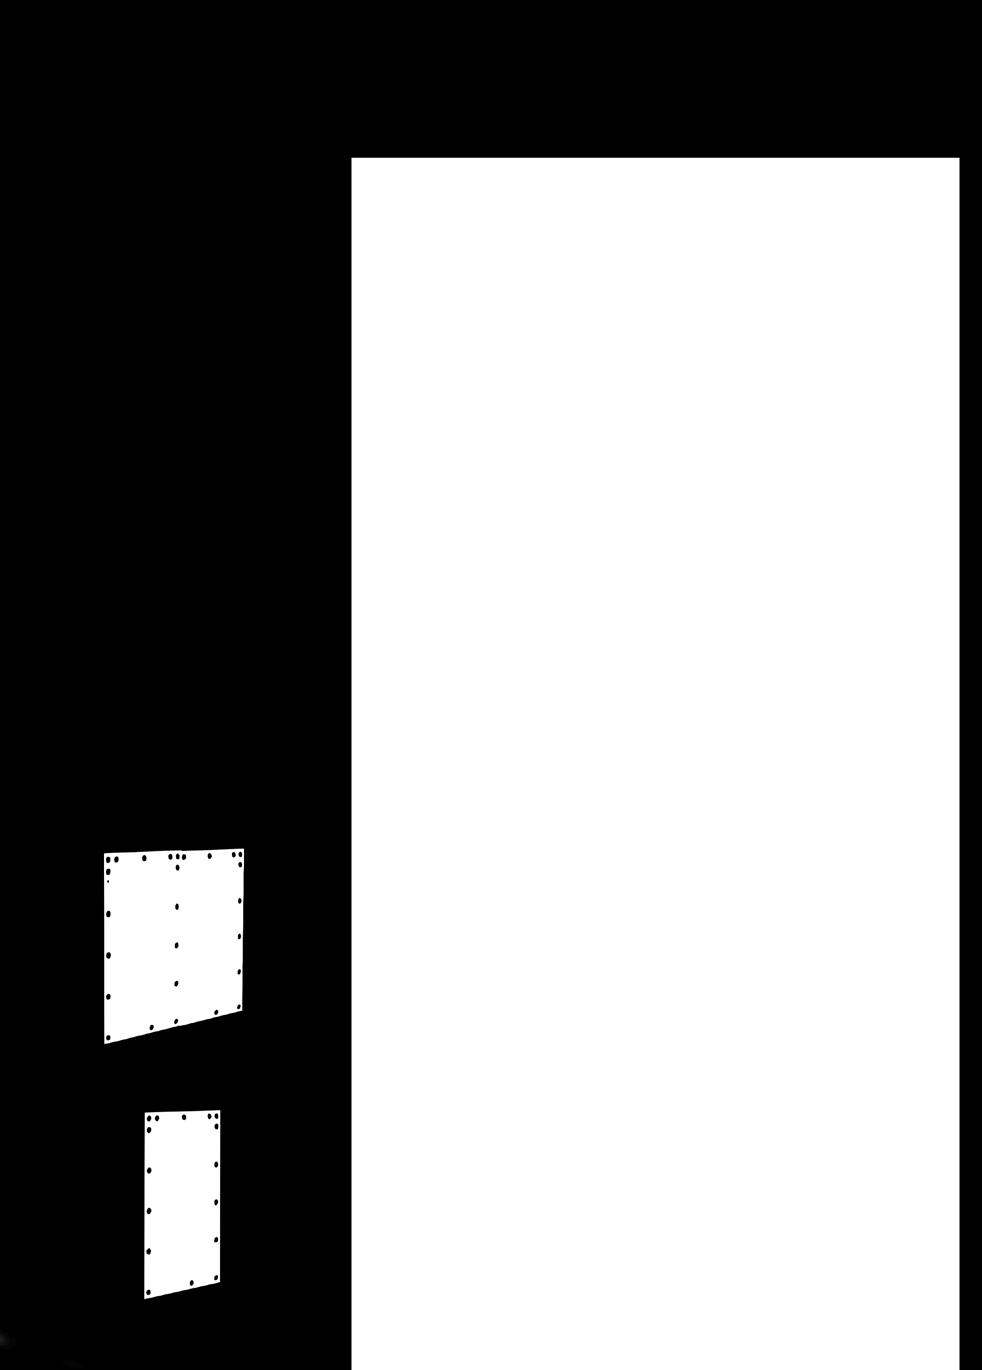 Dubleks asansörlerde gösterge konumlandırma Dubleks kat butonyeri üzerindeki göstergelerde A ve B asansörünün gösterge konumları katlardaki kapı konumuna göre menüden değiştirilebilir.